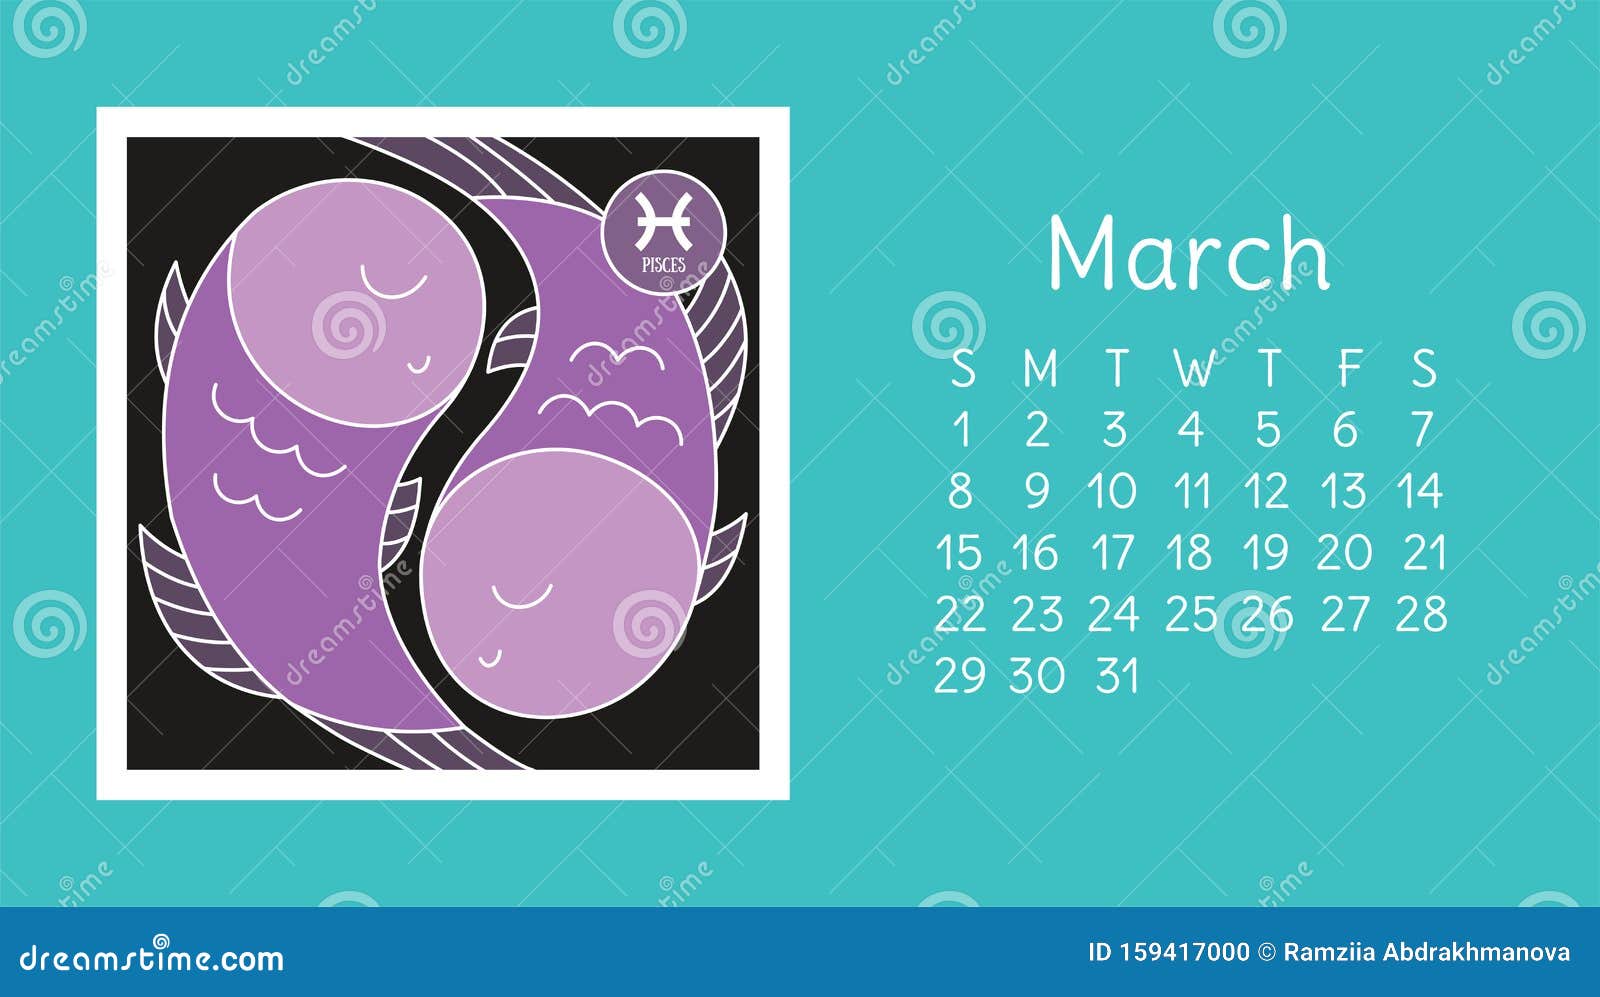 31 march zodiac